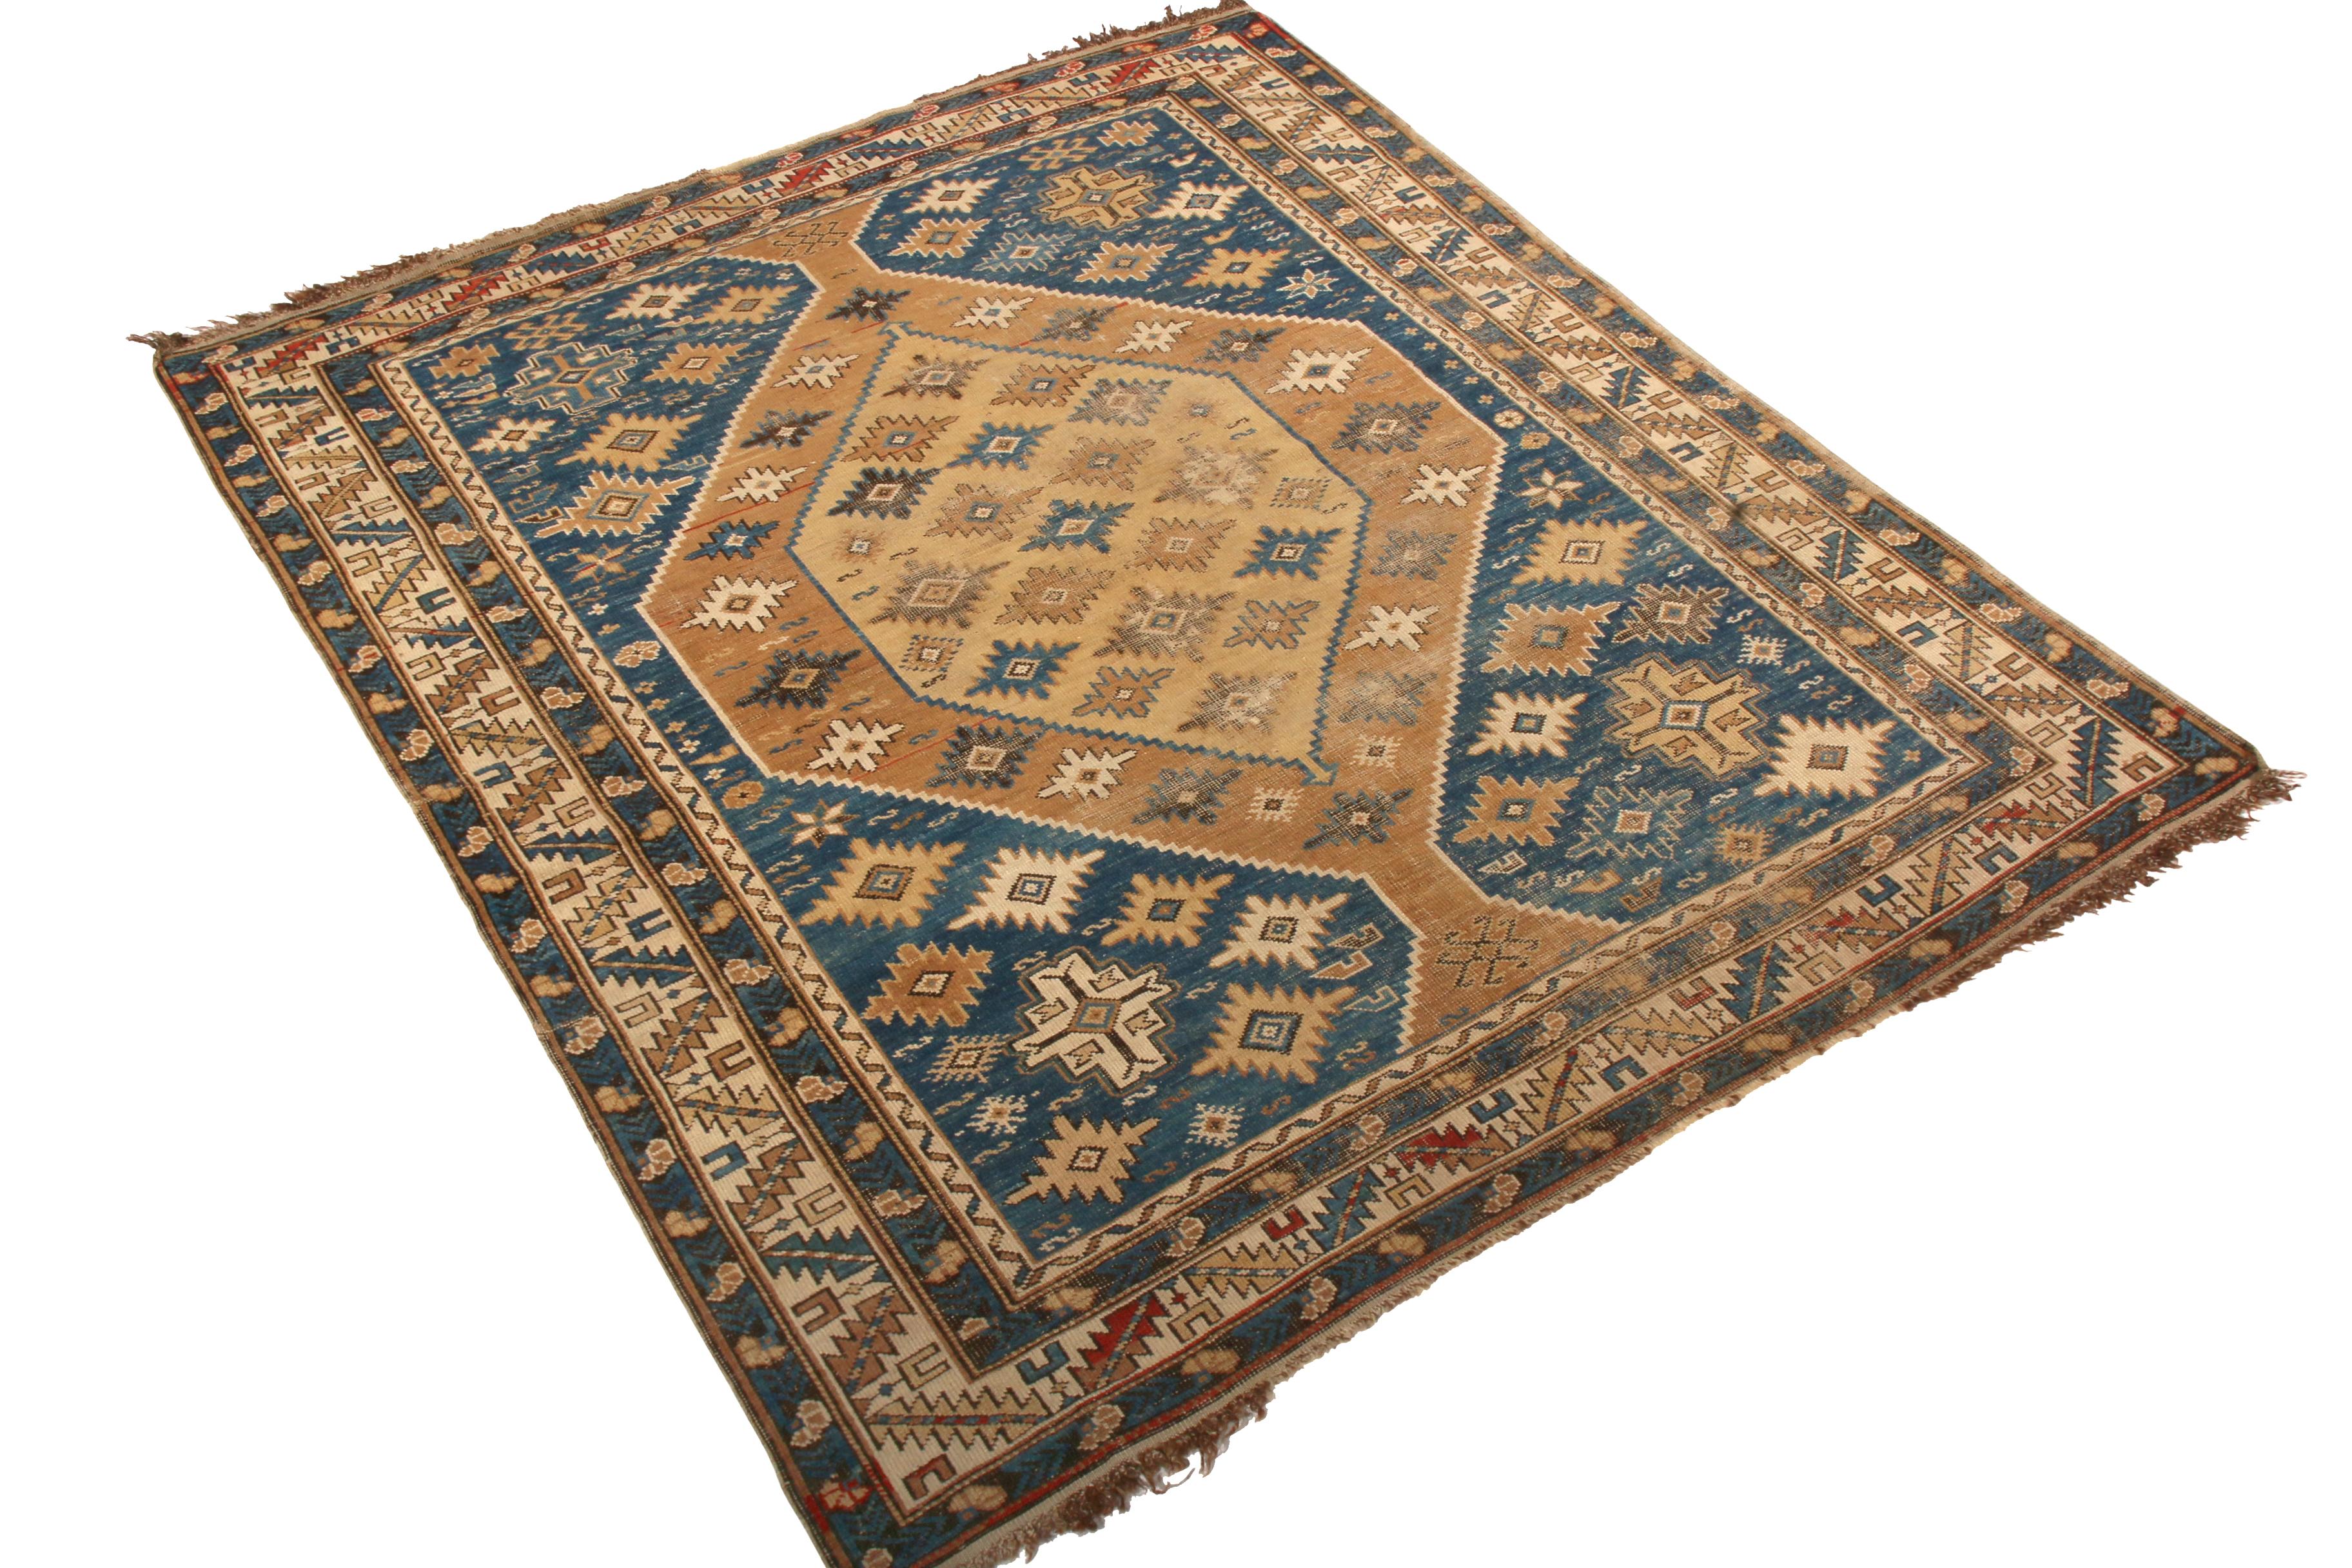 Noué à la main en laine et originaire de Russie entre 1910 et 1920, ce tapis Kuba ancien reprend les teintes traditionnelles de cette famille de tapis ancestrale - un jeu de brun beige riche et de bleu abrasé qui fait ressortir les détails